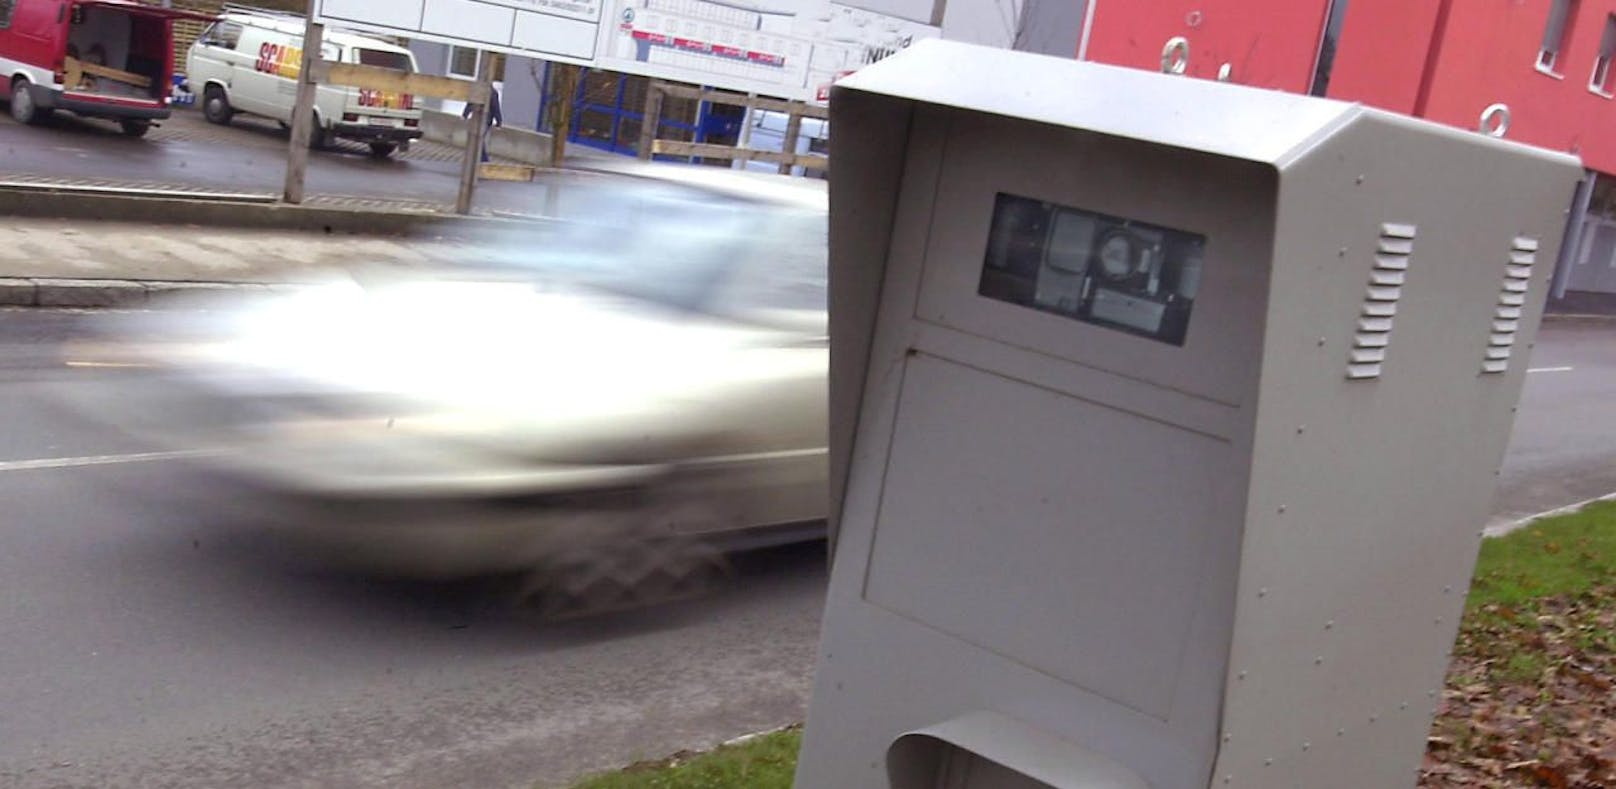 Die Radarboxen hatten seit ihrer Einführung in Freistadt kein Erbarmen mit Rasern: 700 mal &quot;blitzten&quot; die Geräte Autofahrer in nur zwei Wochen. (Symbolbild).